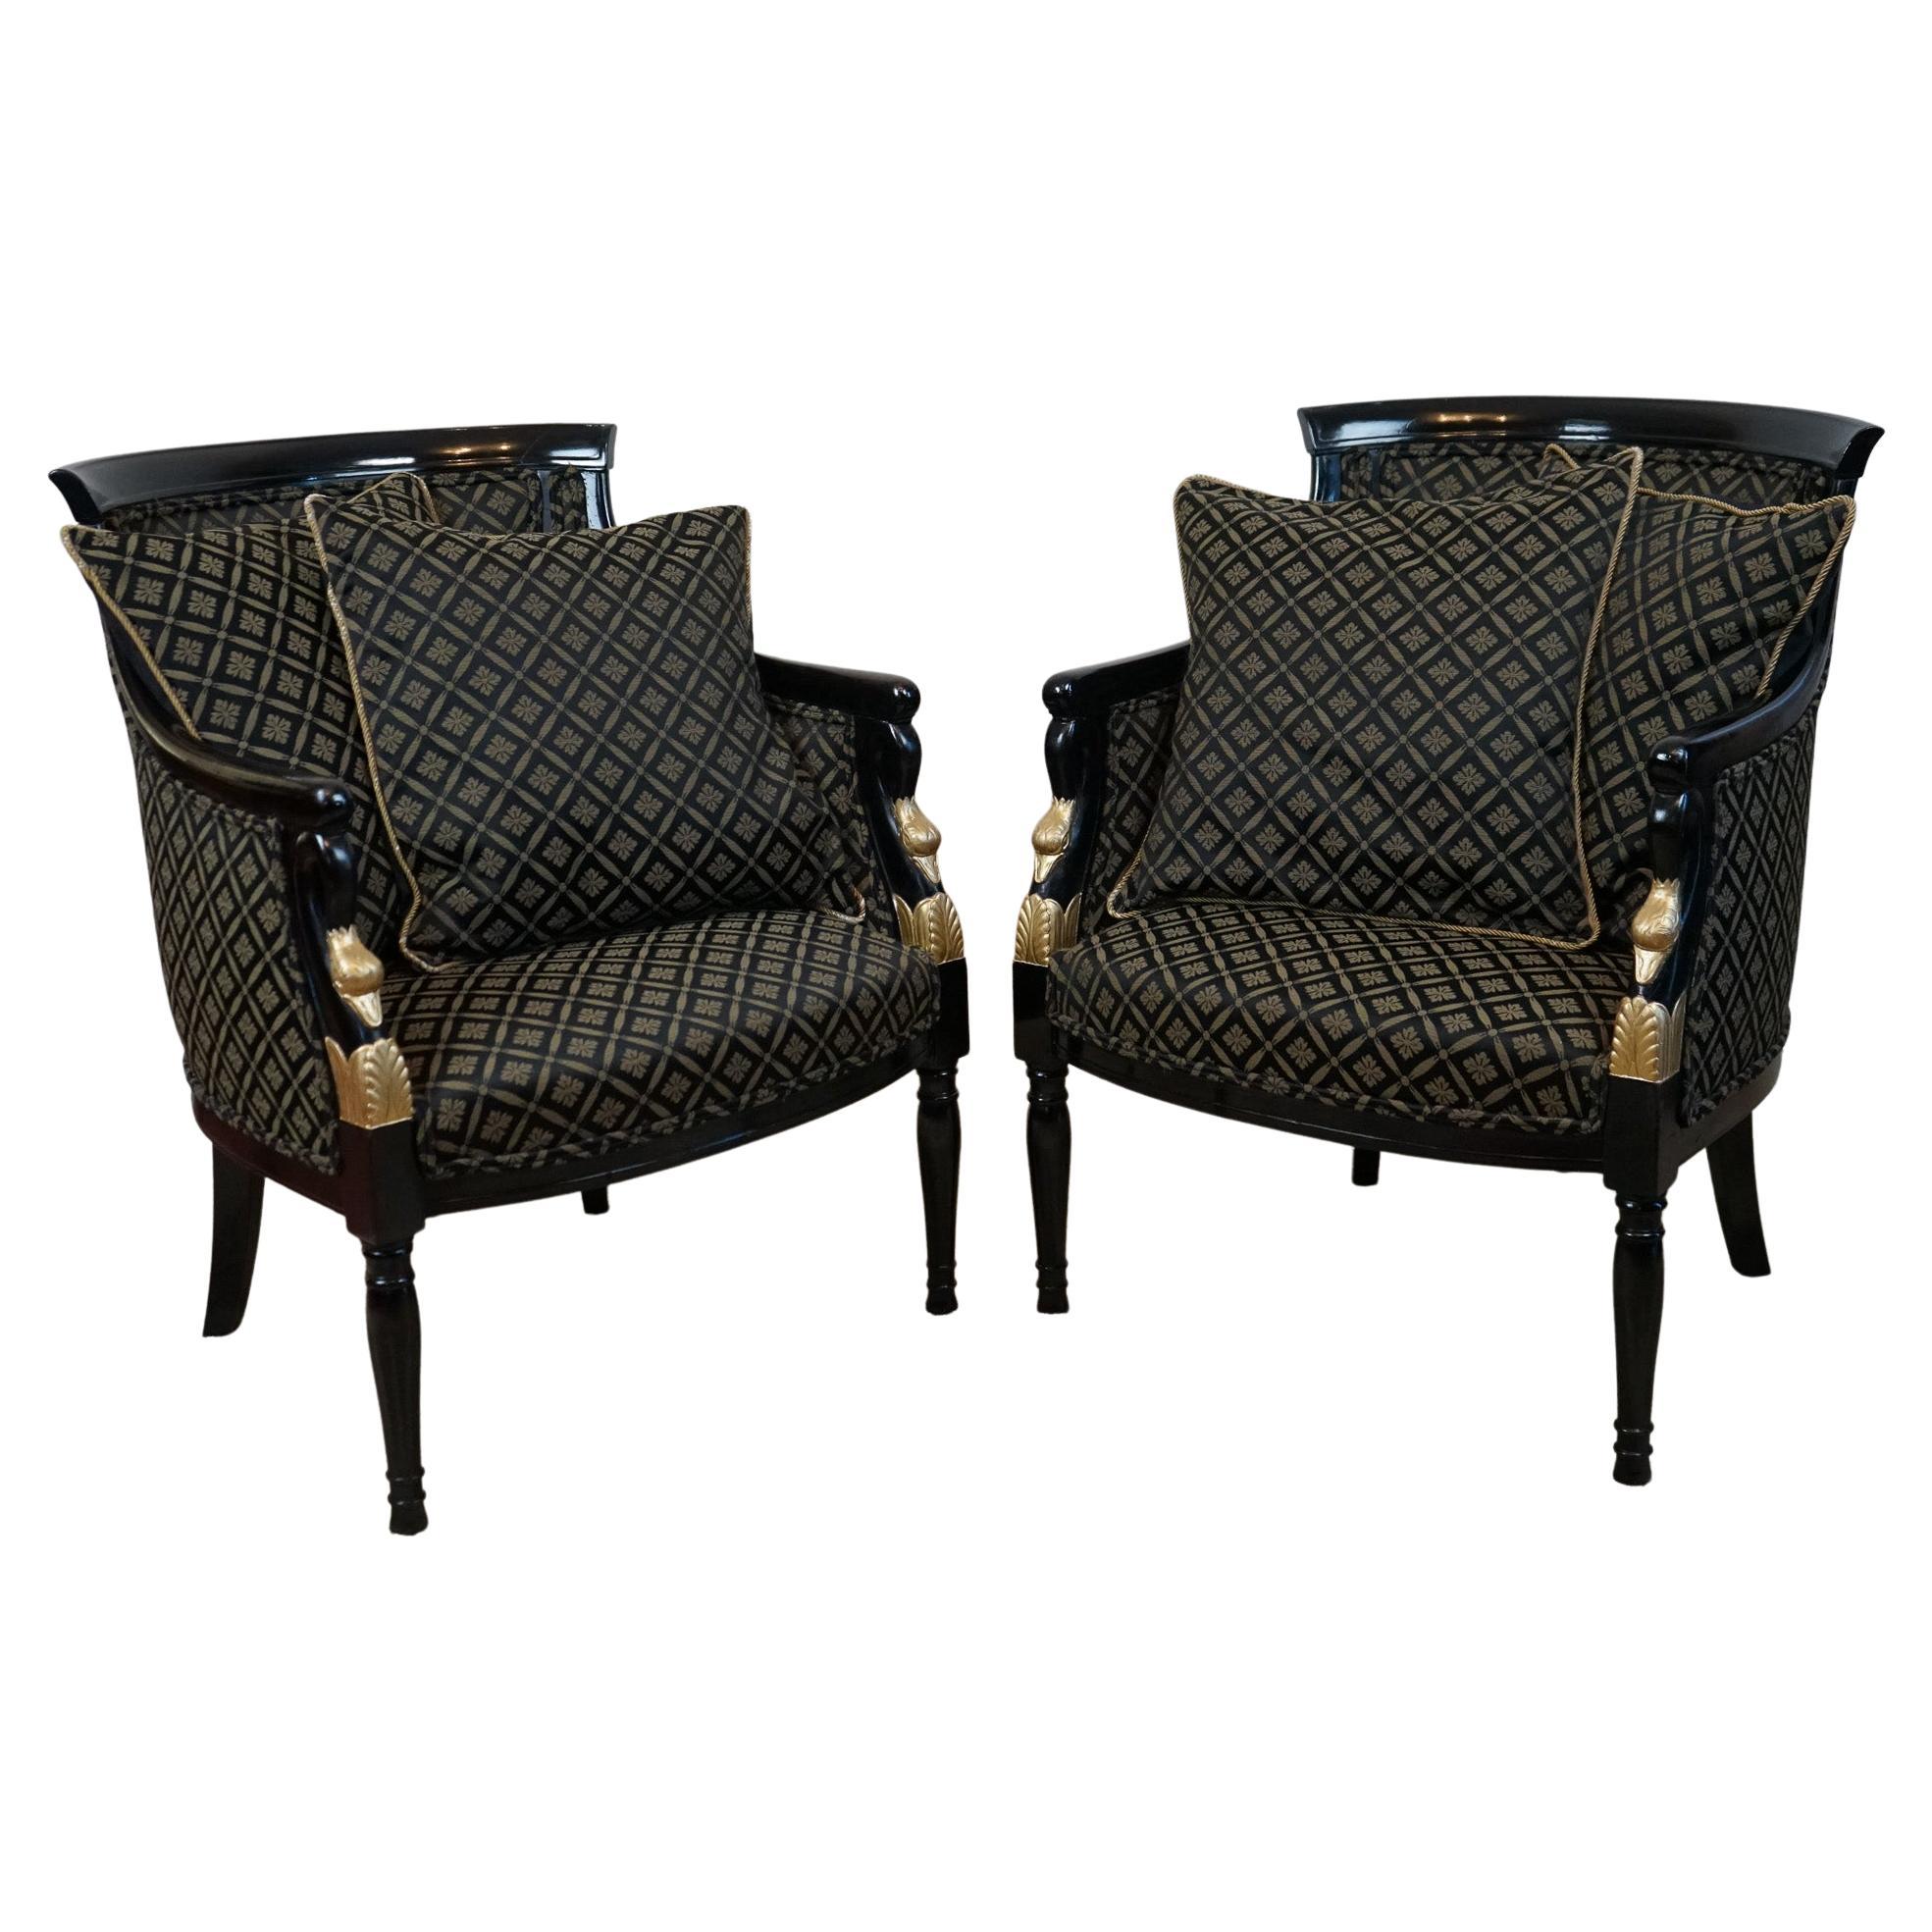 Magnifique paire de fauteuils danois du 19e siècle